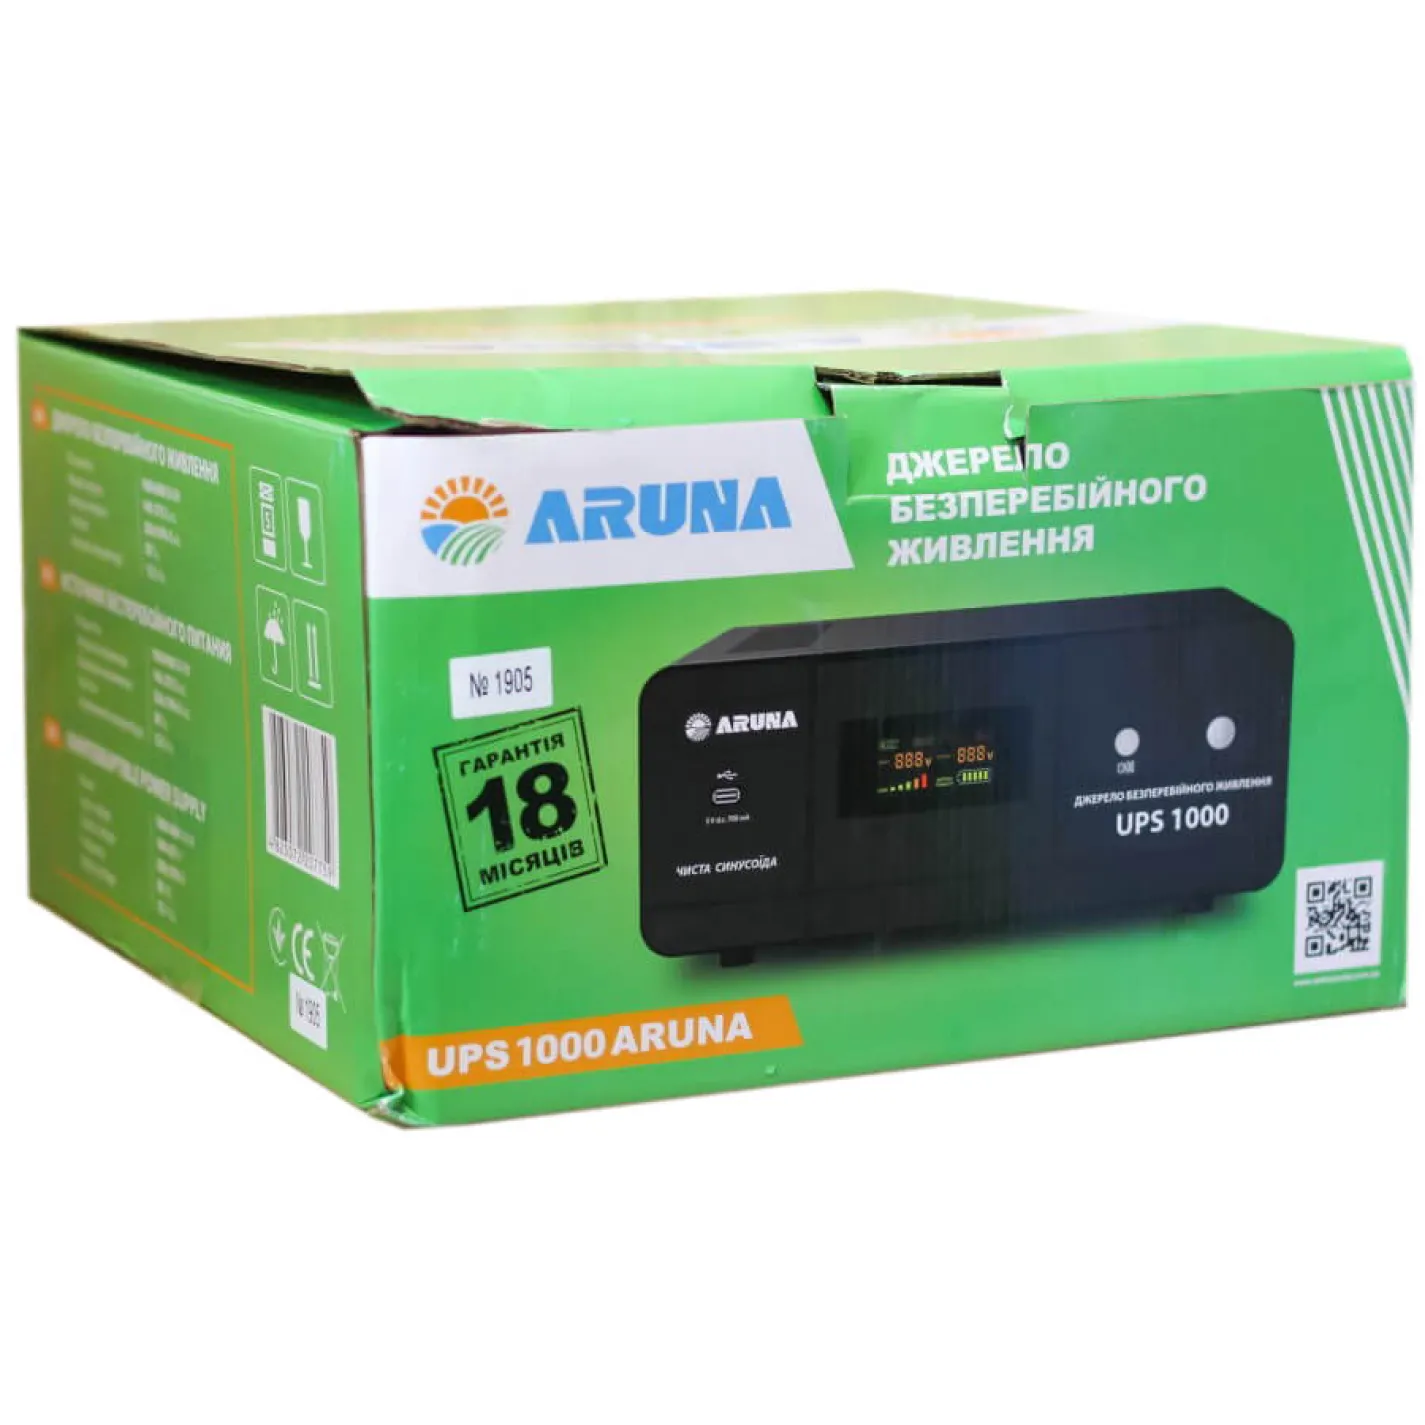 Джерело безперебійного живлення Aruna UPS 500  - Фото 3